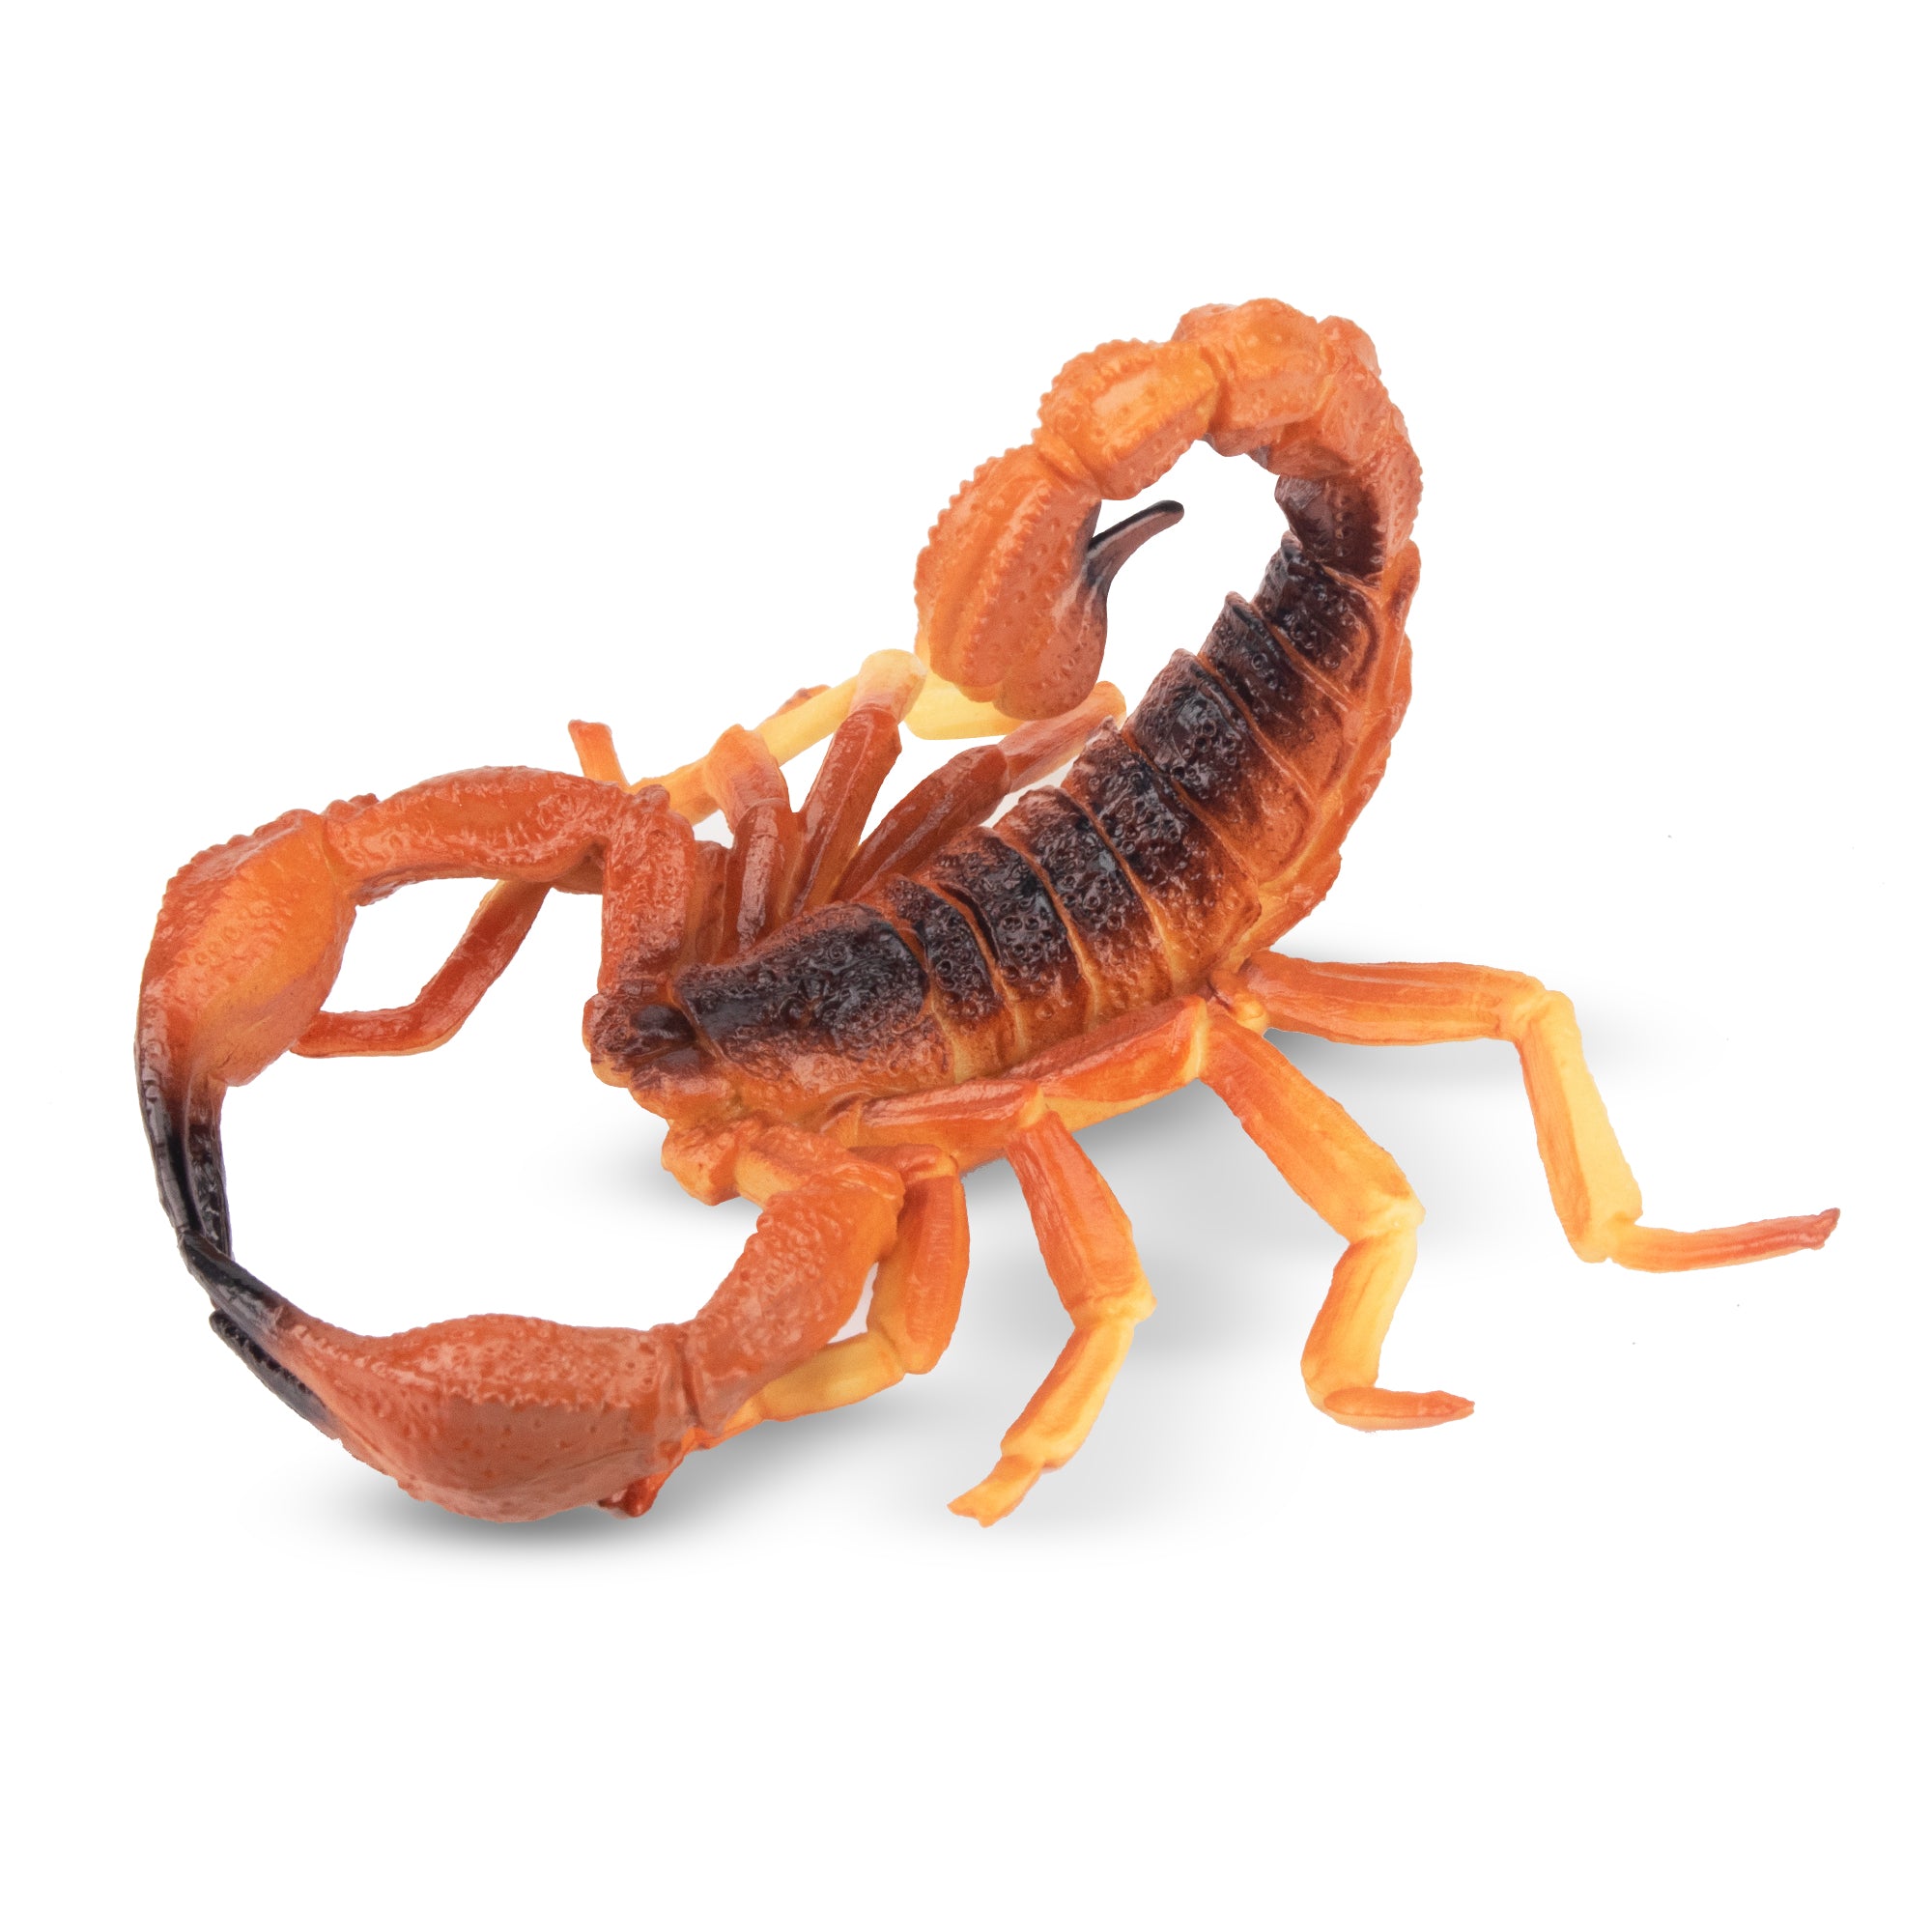 Toymany Red Scorpion Figurine Toy-2